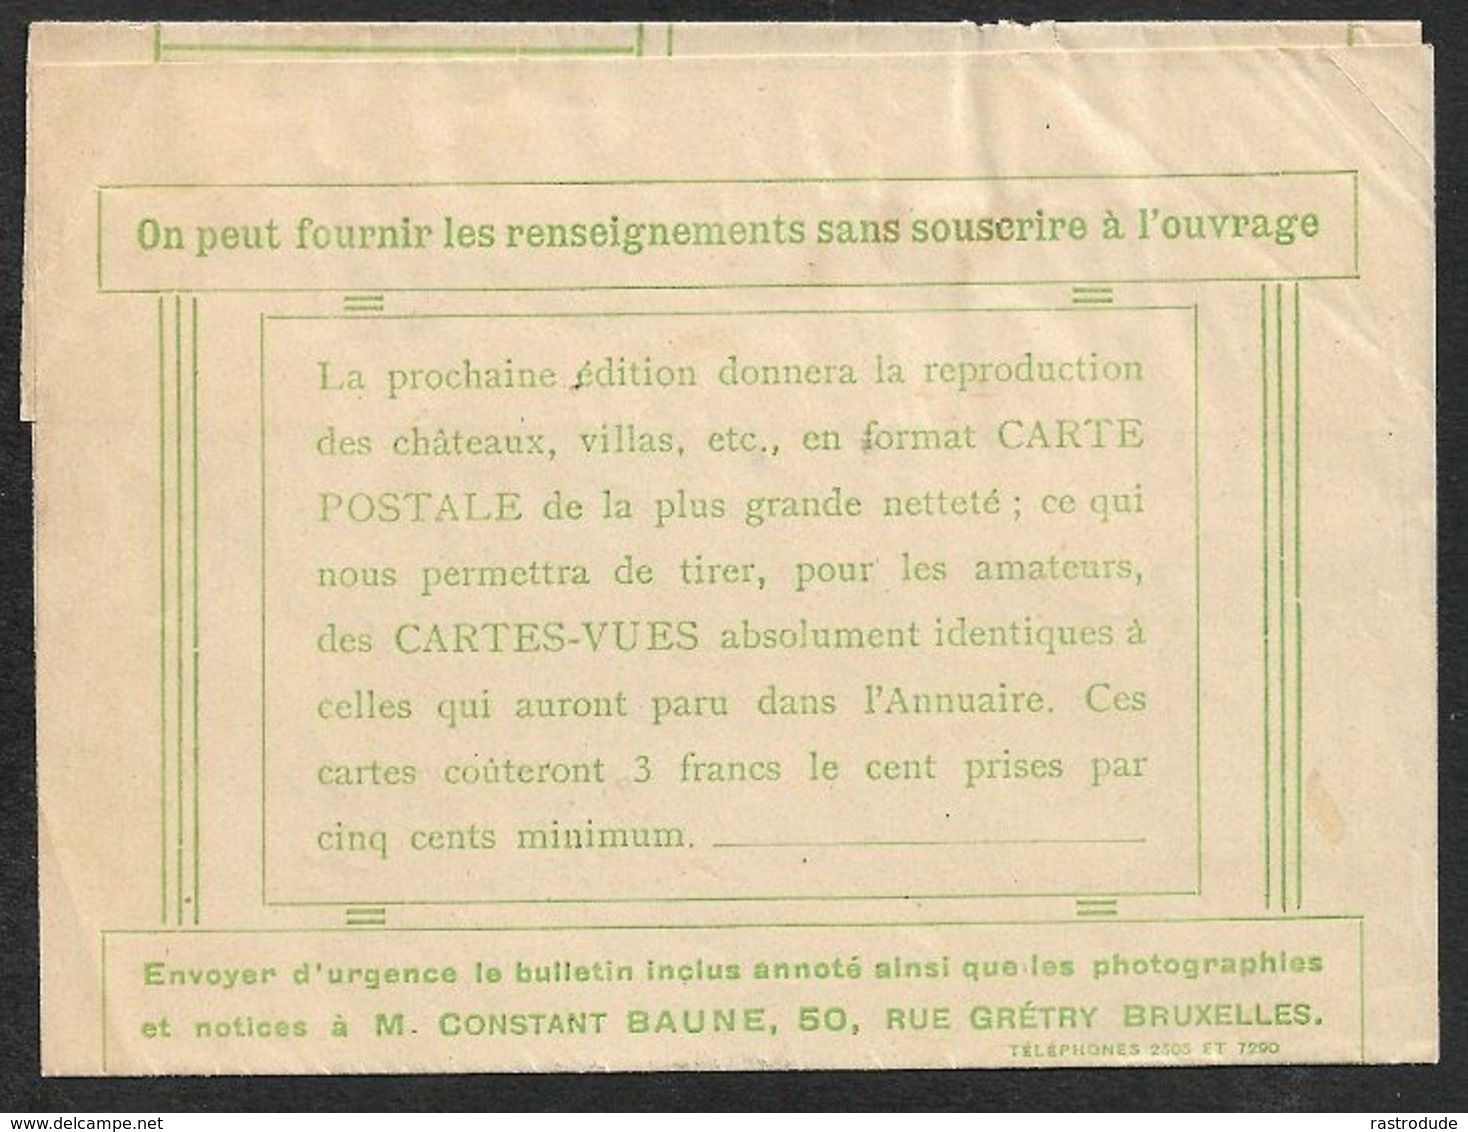 1909 BELGIQUE - PREOB. 1C A GAND  - BANDE L'ANNUAIRE DES CHATEAUX - Rolstempels 1900-09